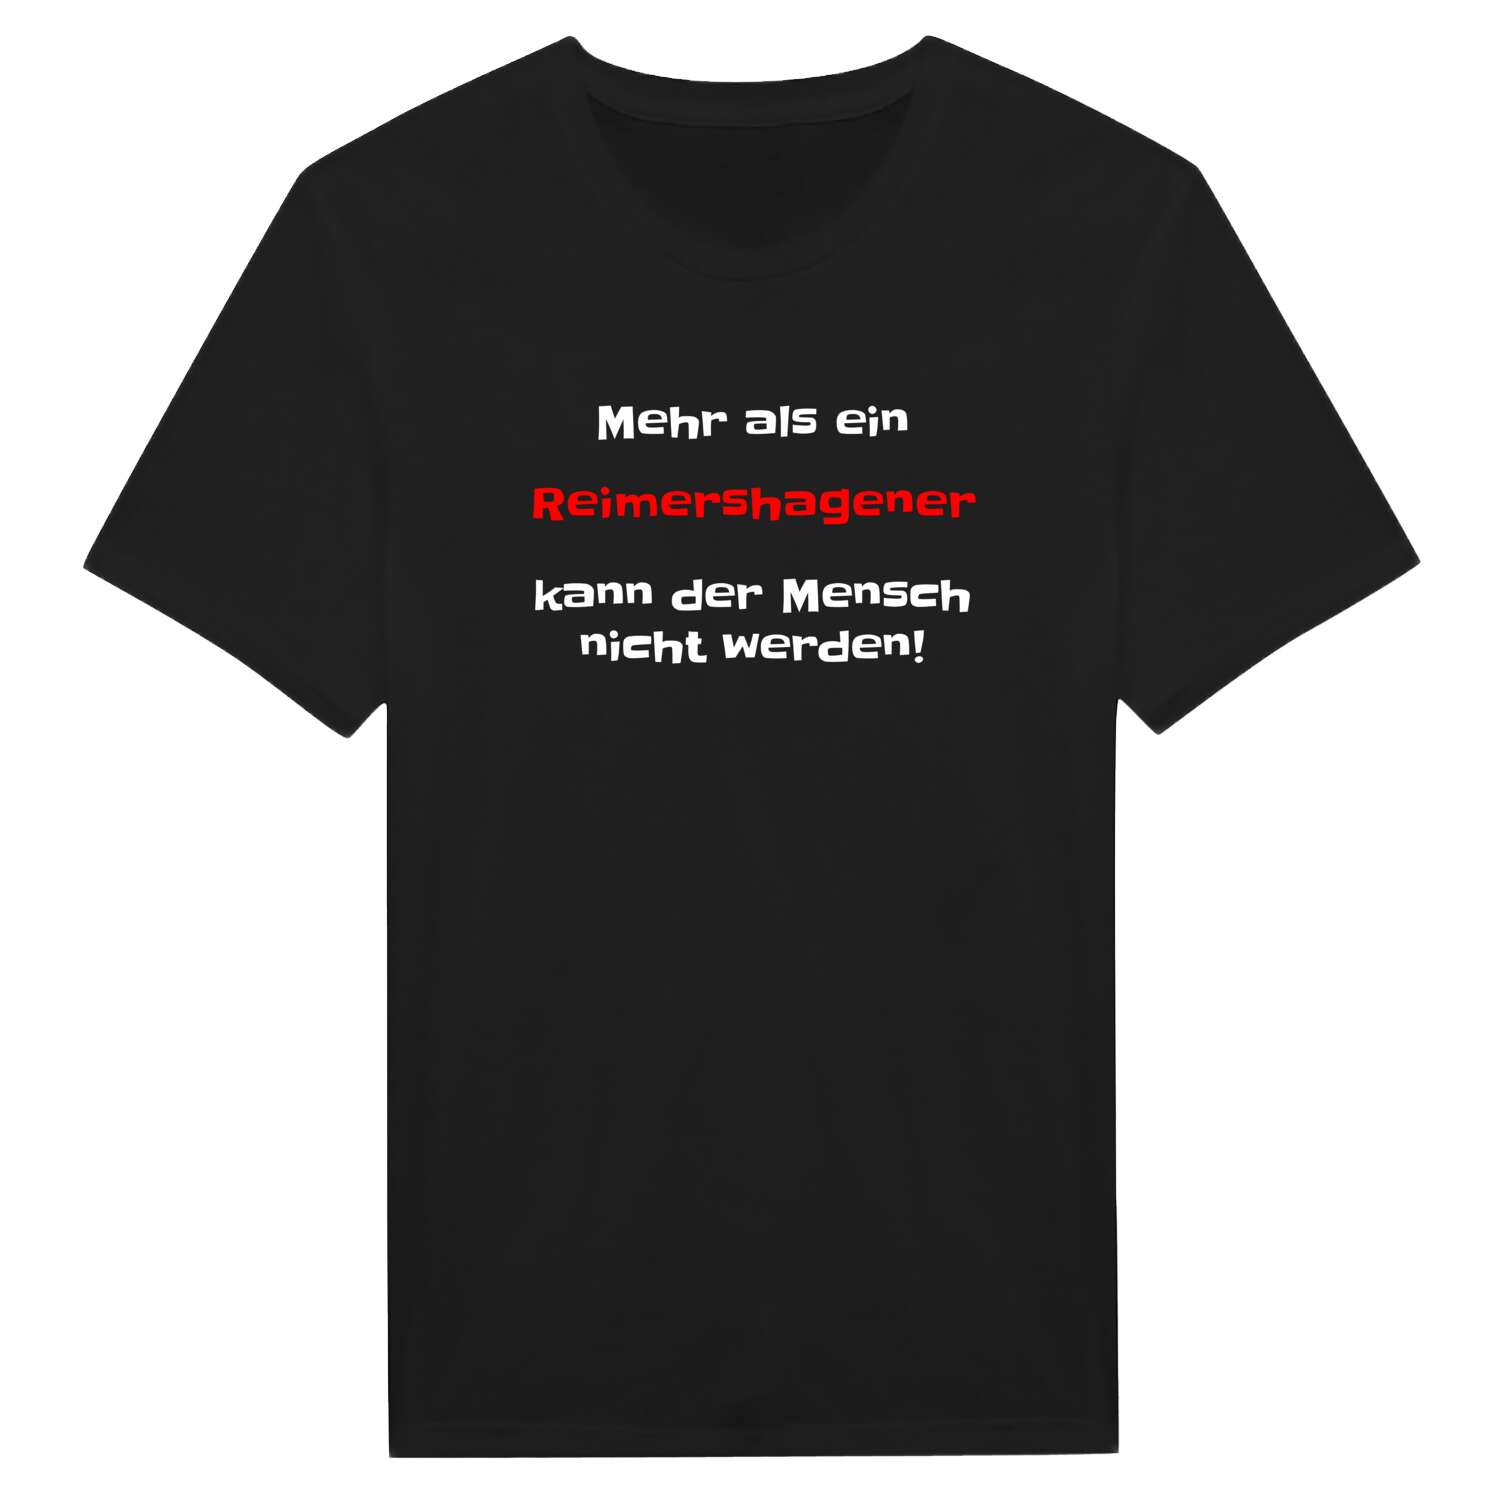 Reimershagen T-Shirt »Mehr als ein«